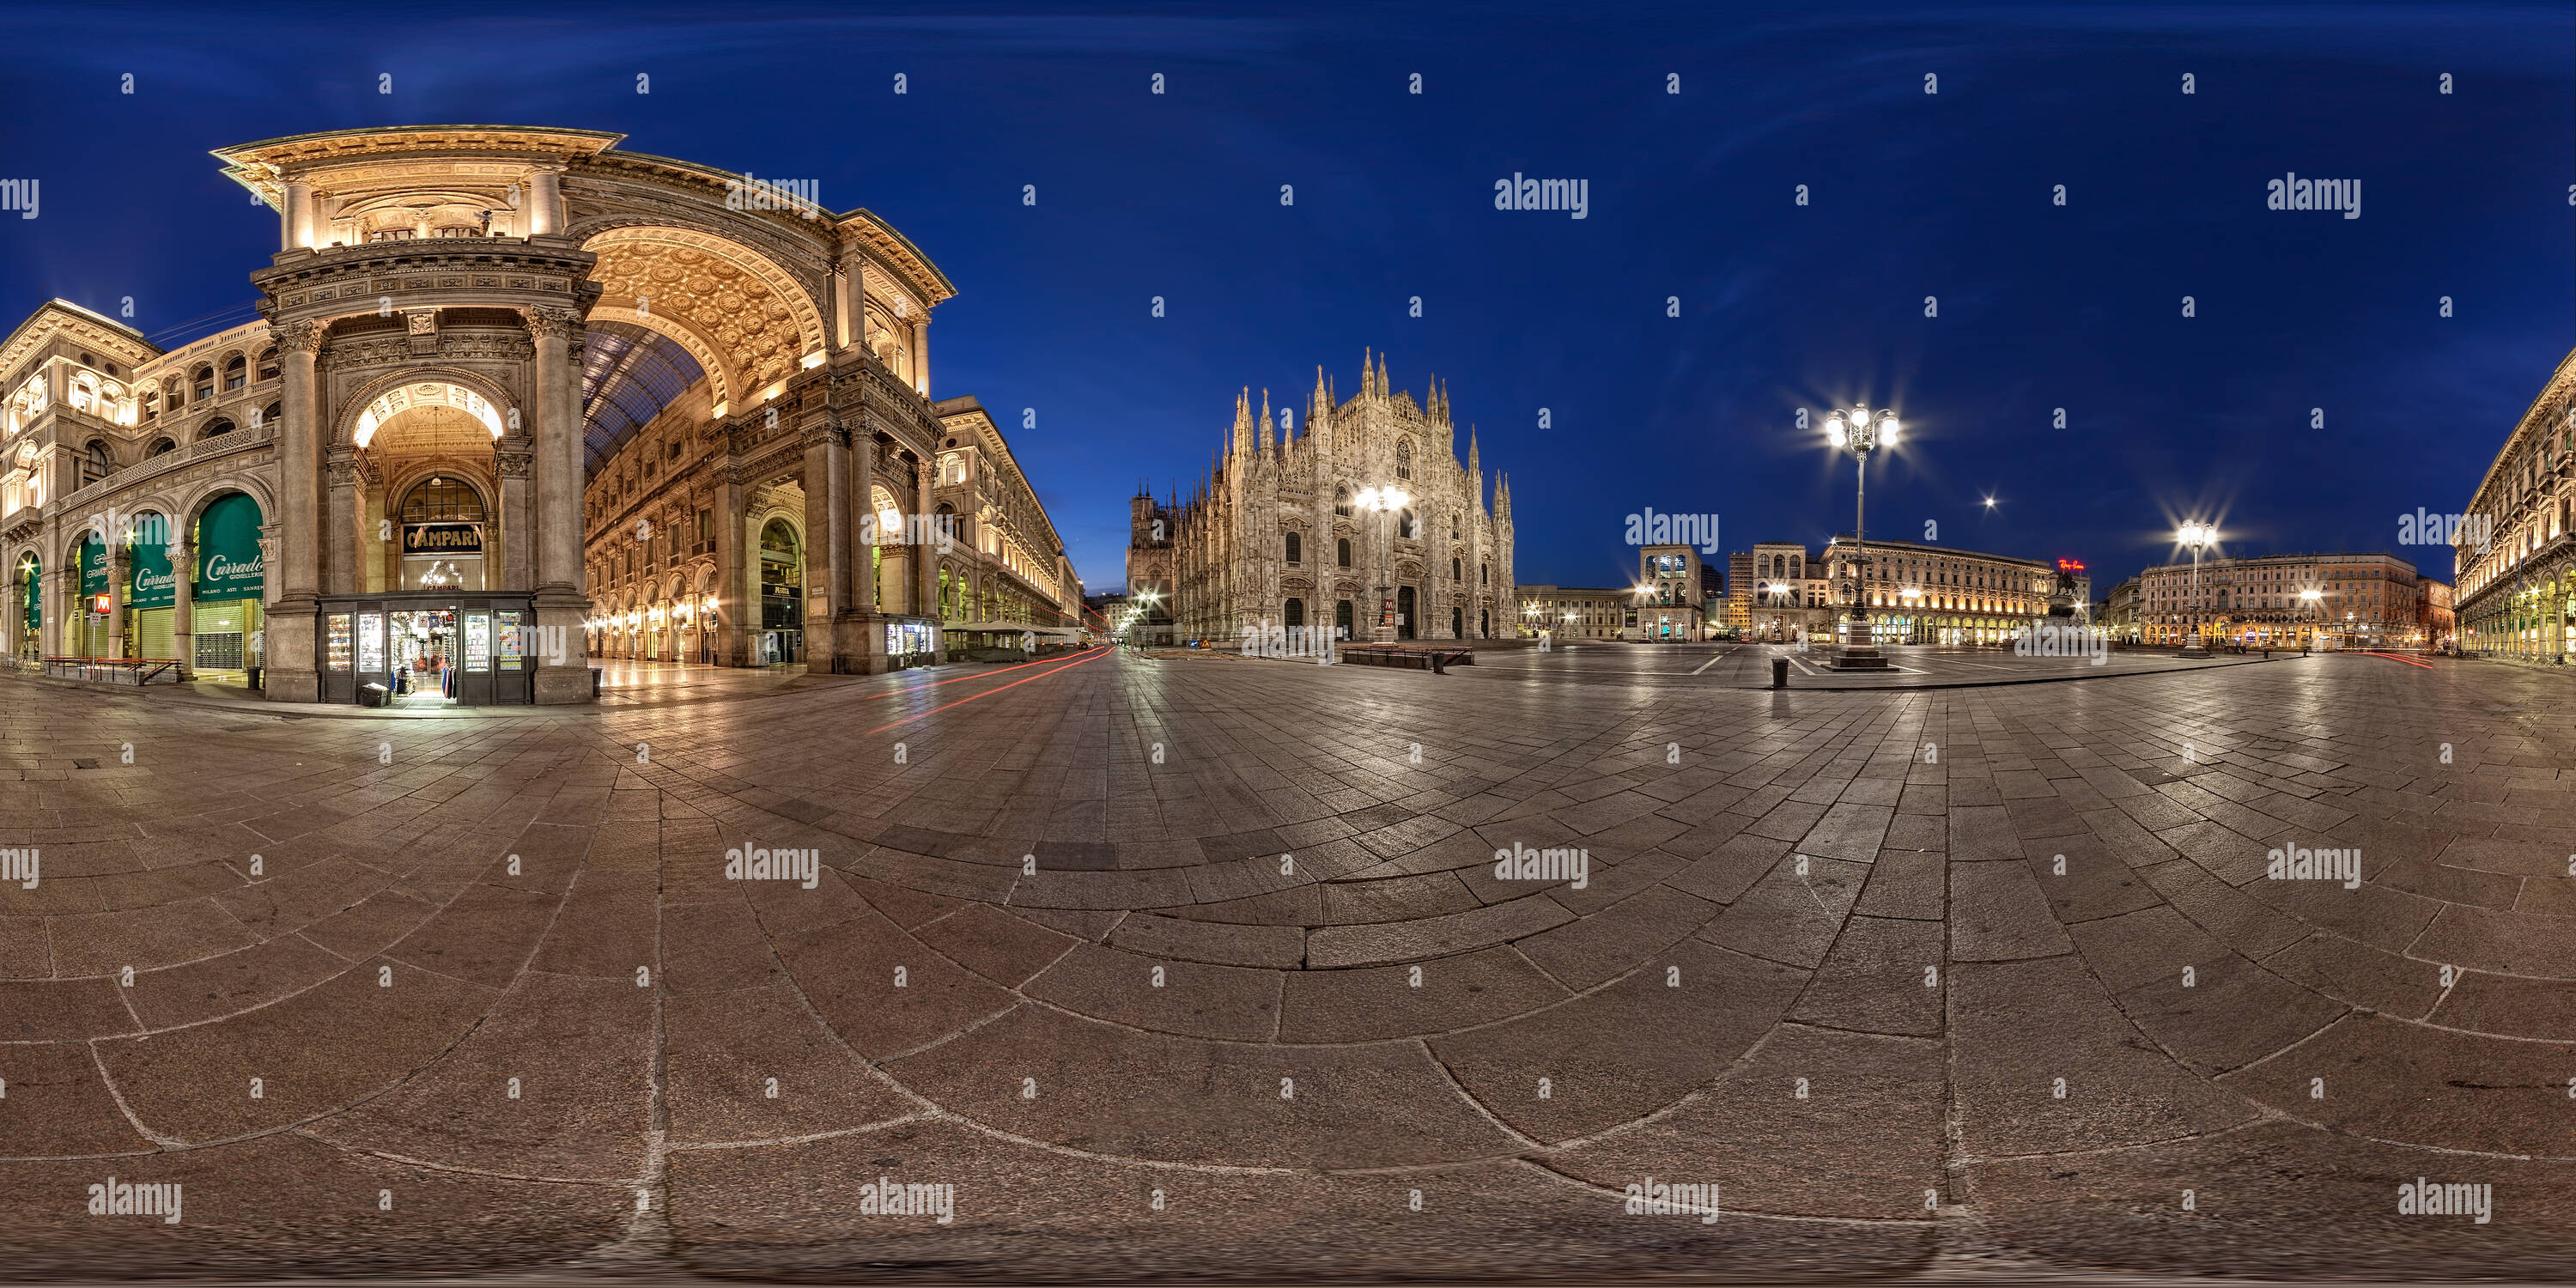 Visualizzazione panoramica a 360 gradi di Piazza Duomo. Milano.